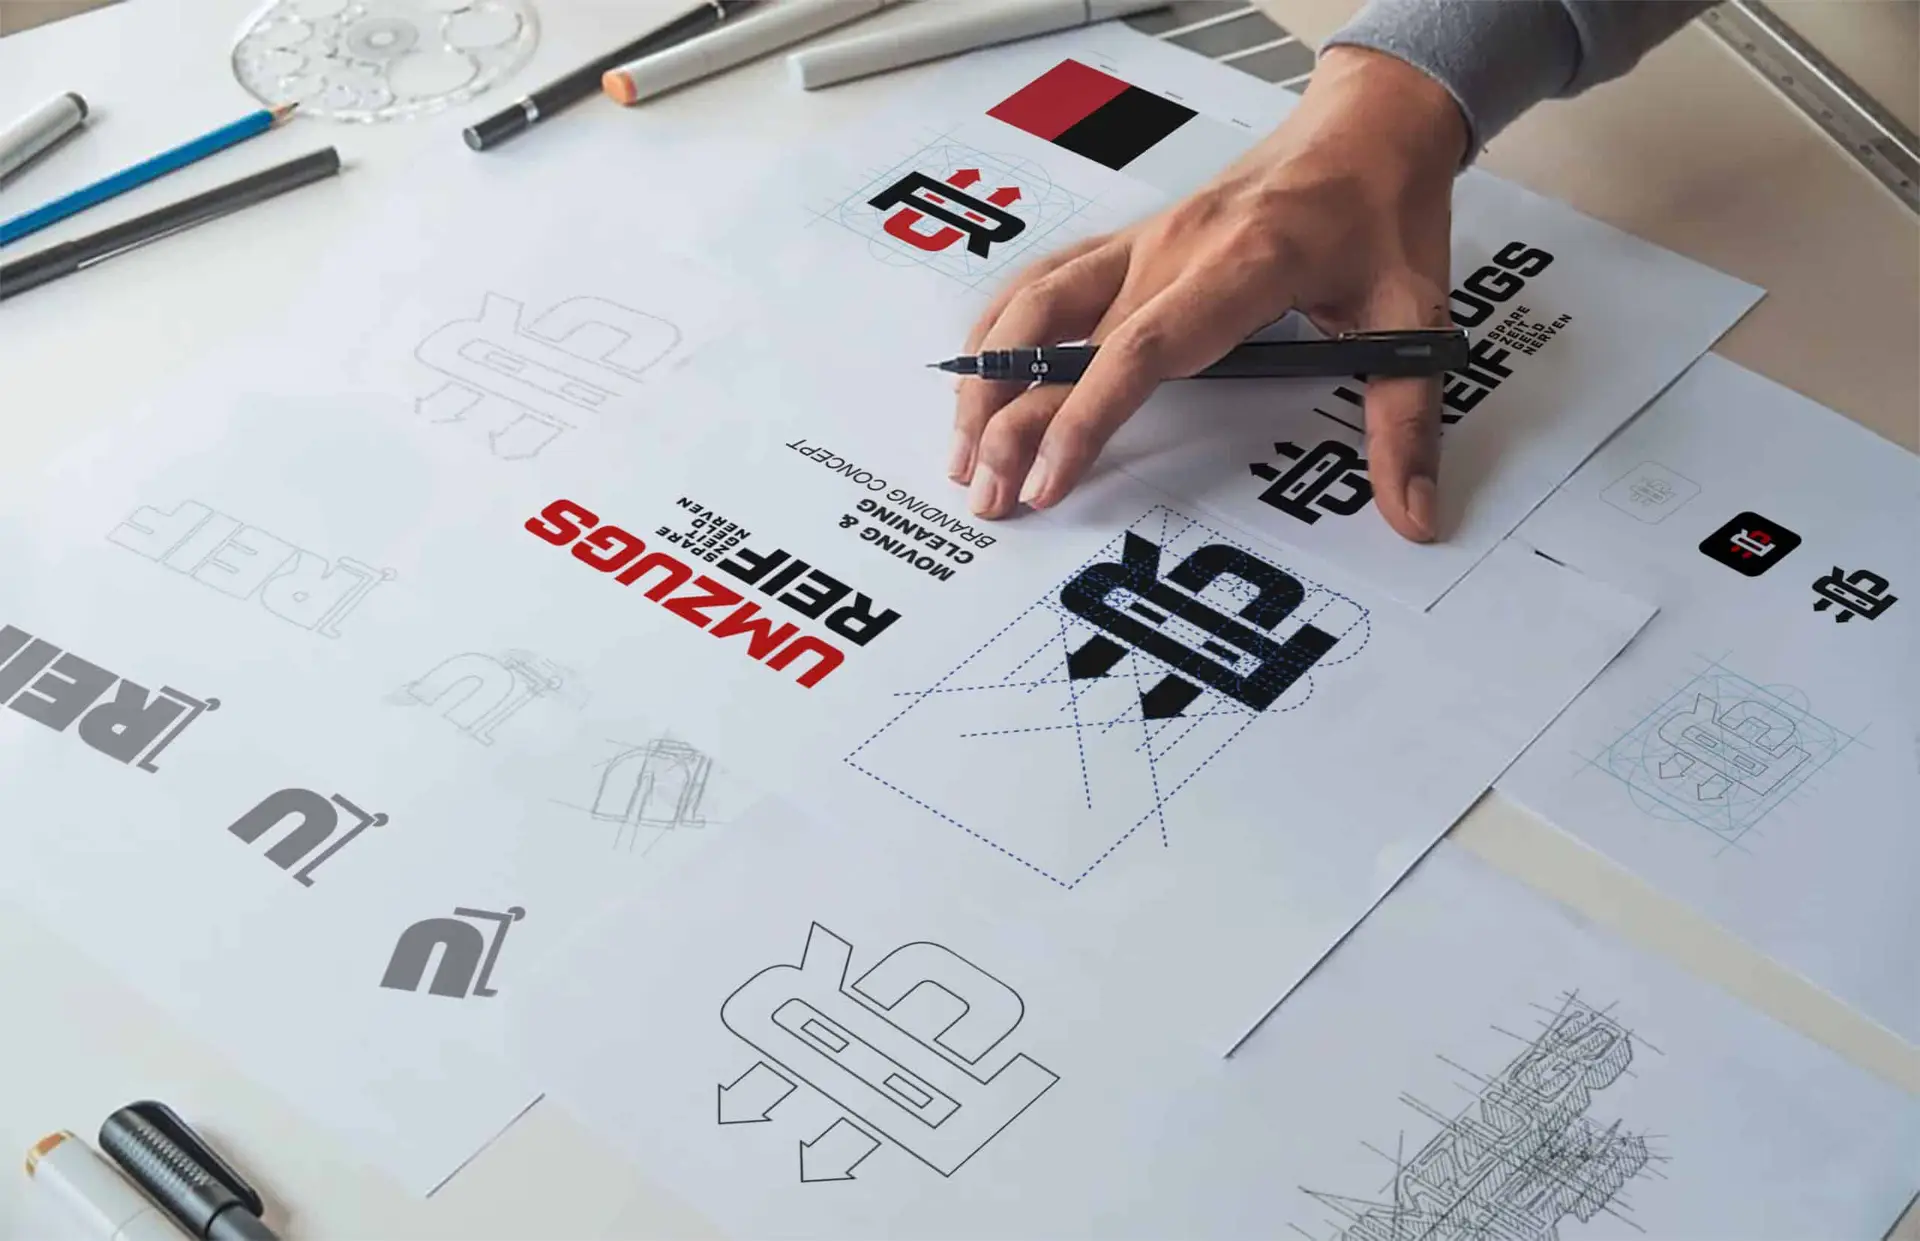 Einblick in den kreativen Designprozess von GoldenWing mit Fokus auf die Entstehung eines Firmenlogo, angefangen bei ersten Skizzen bis hin zu finalisierten Versionen in Schwarz und Rot, präsentiert auf einem Arbeitsplatz mit Designwerkzeugen. agentur für branding & webdesign